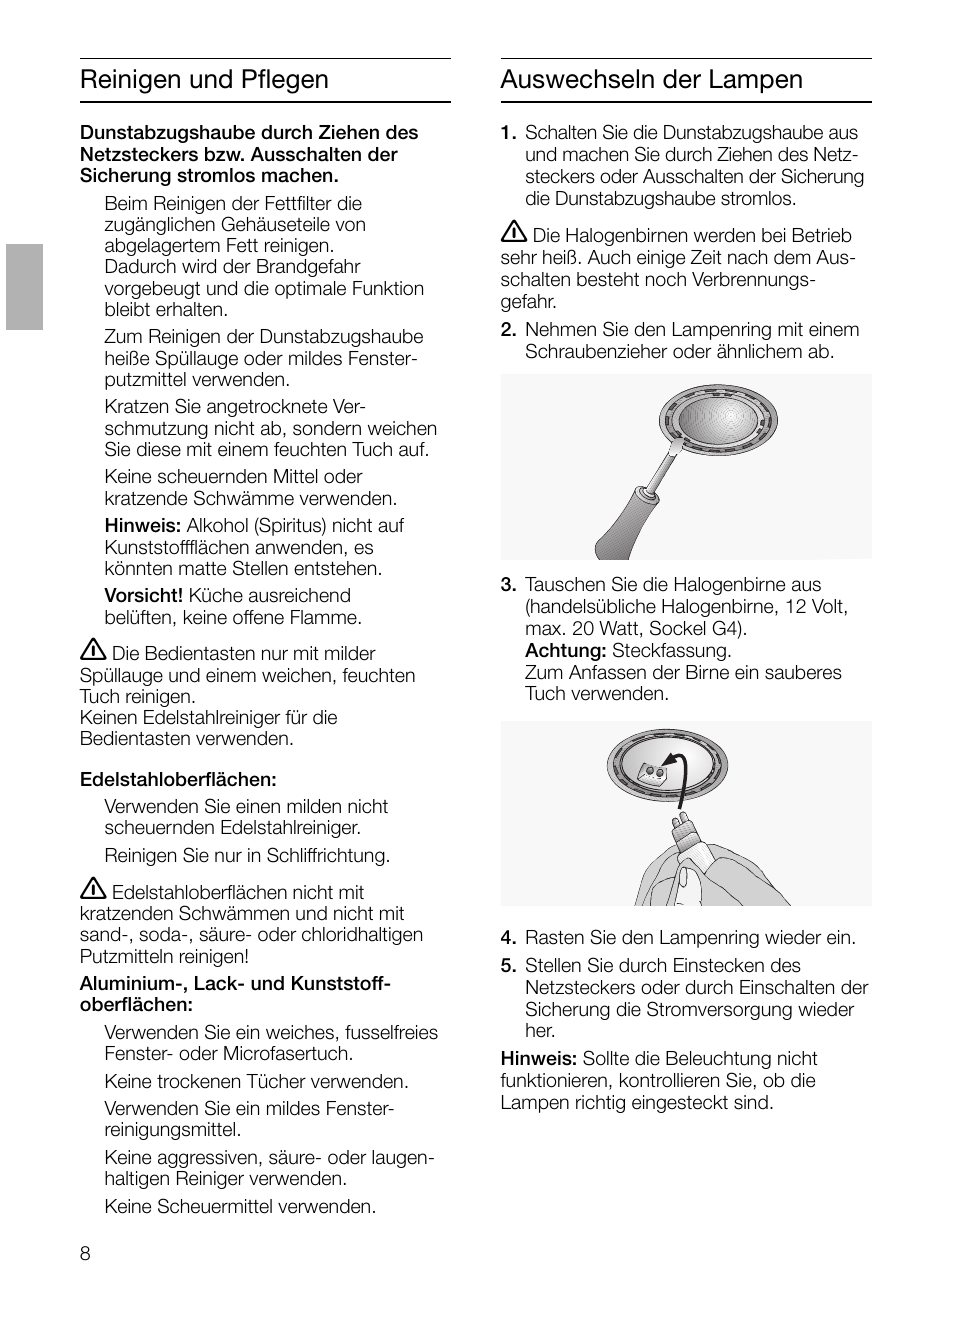 Reinigen und pflegen, Auswechseln der lampen | Siemens LI44630 User Manual  | Page 8 / 100